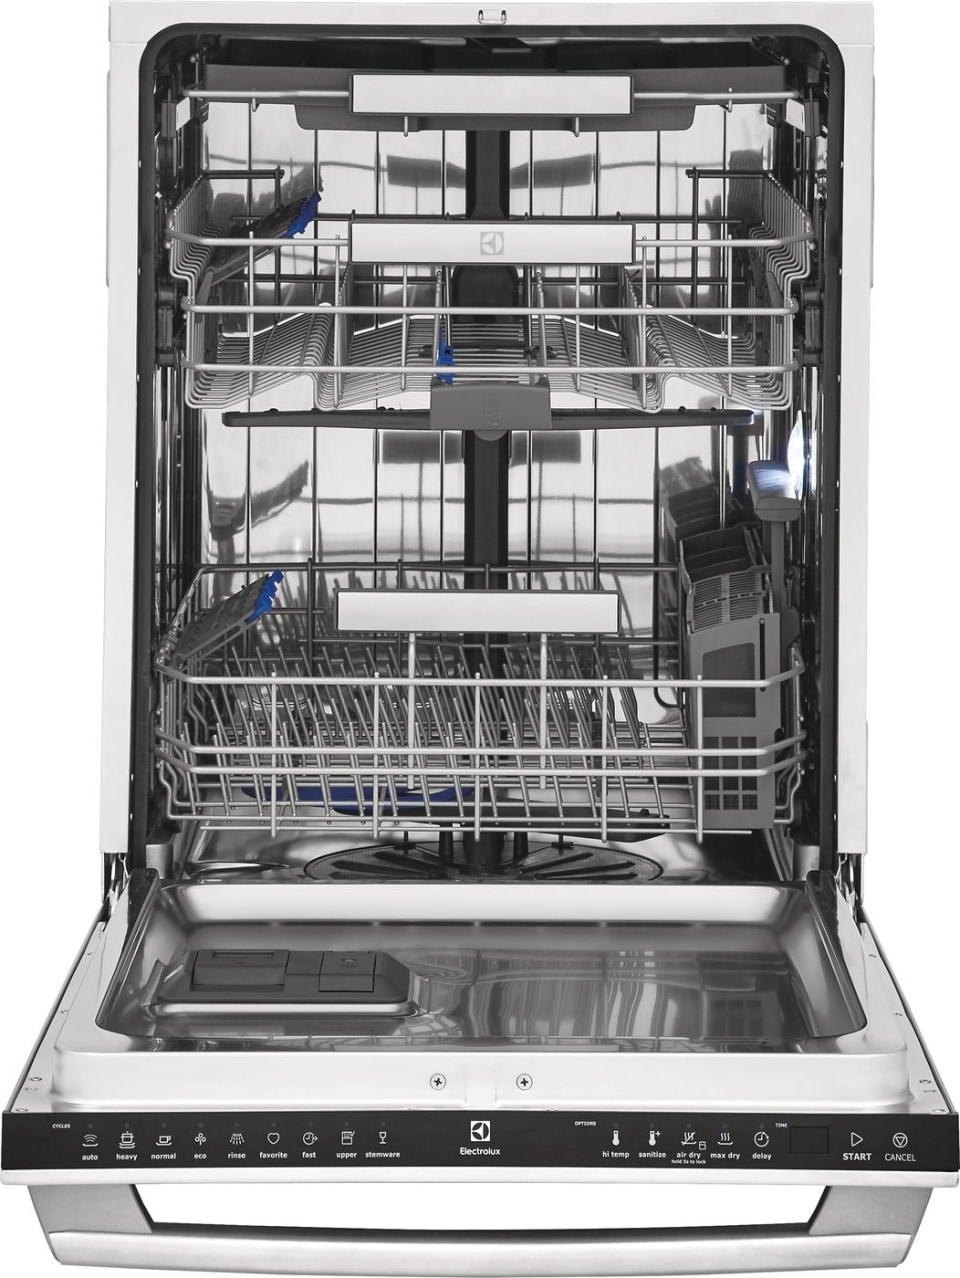 Посудомоечной машинки электролюкс. Посудомоечная машина Electrolux 45 см. Электролюкс посудомойка 45 встраиваемая. ПММ Электролюкс 45 встраиваемая. Электролюкс посудомоечная машина 45 см.